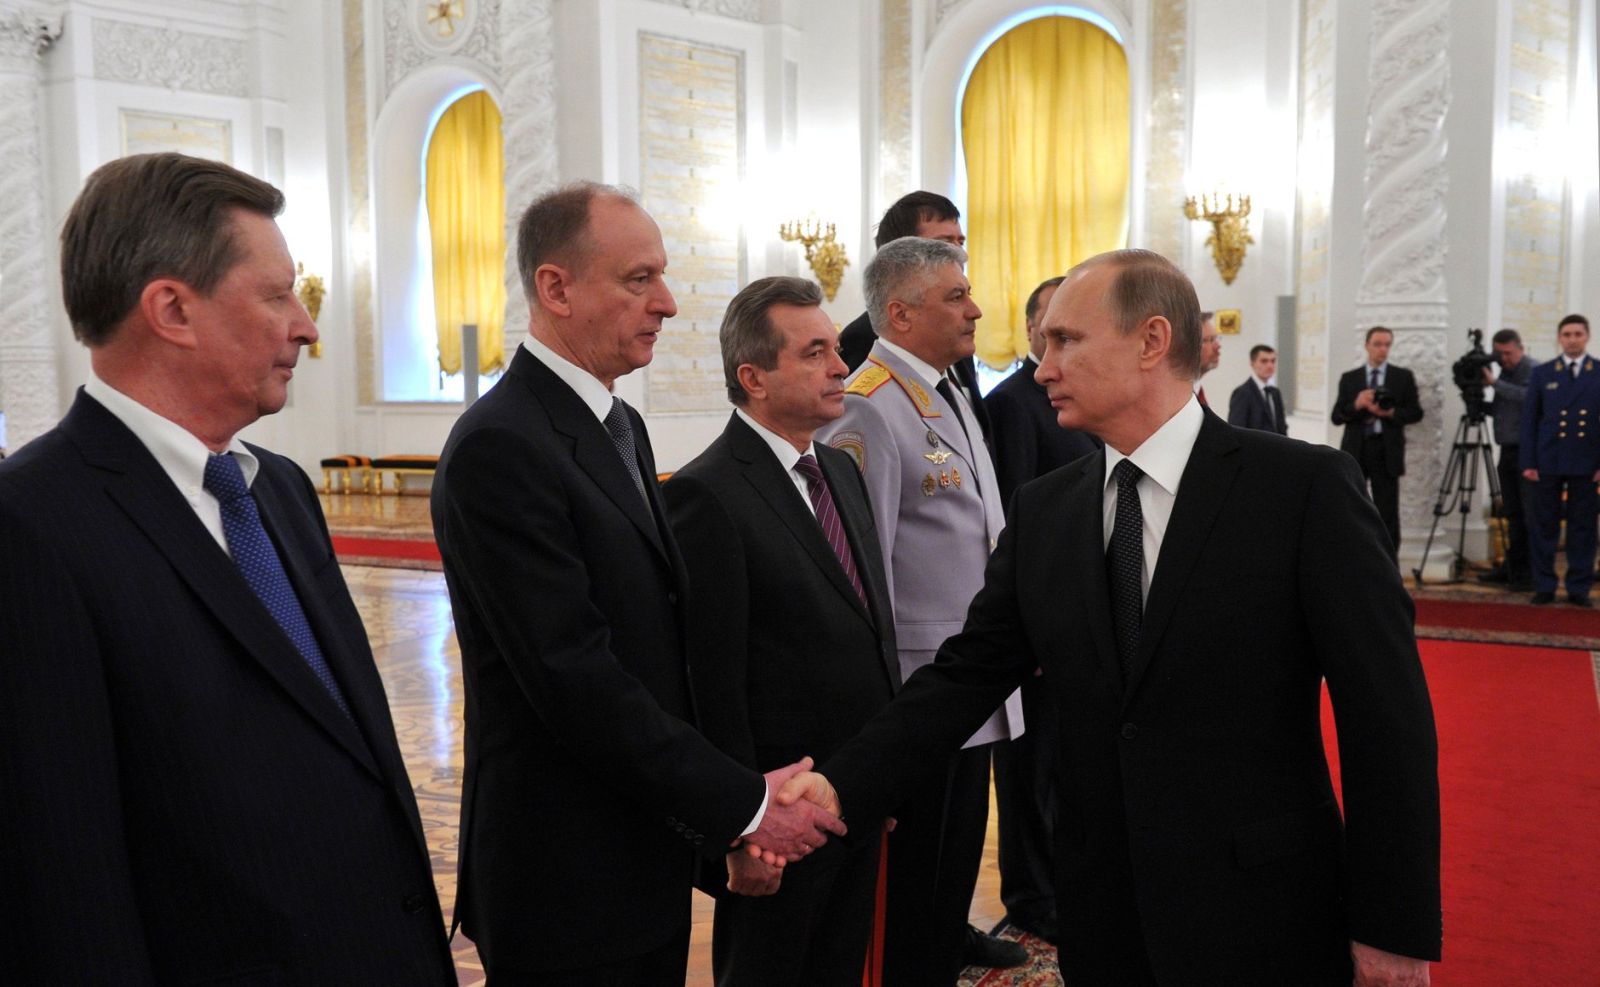 FELJTON: Siloviki, najmoćniji Putinovi ljudi od kojih strepe Rusi